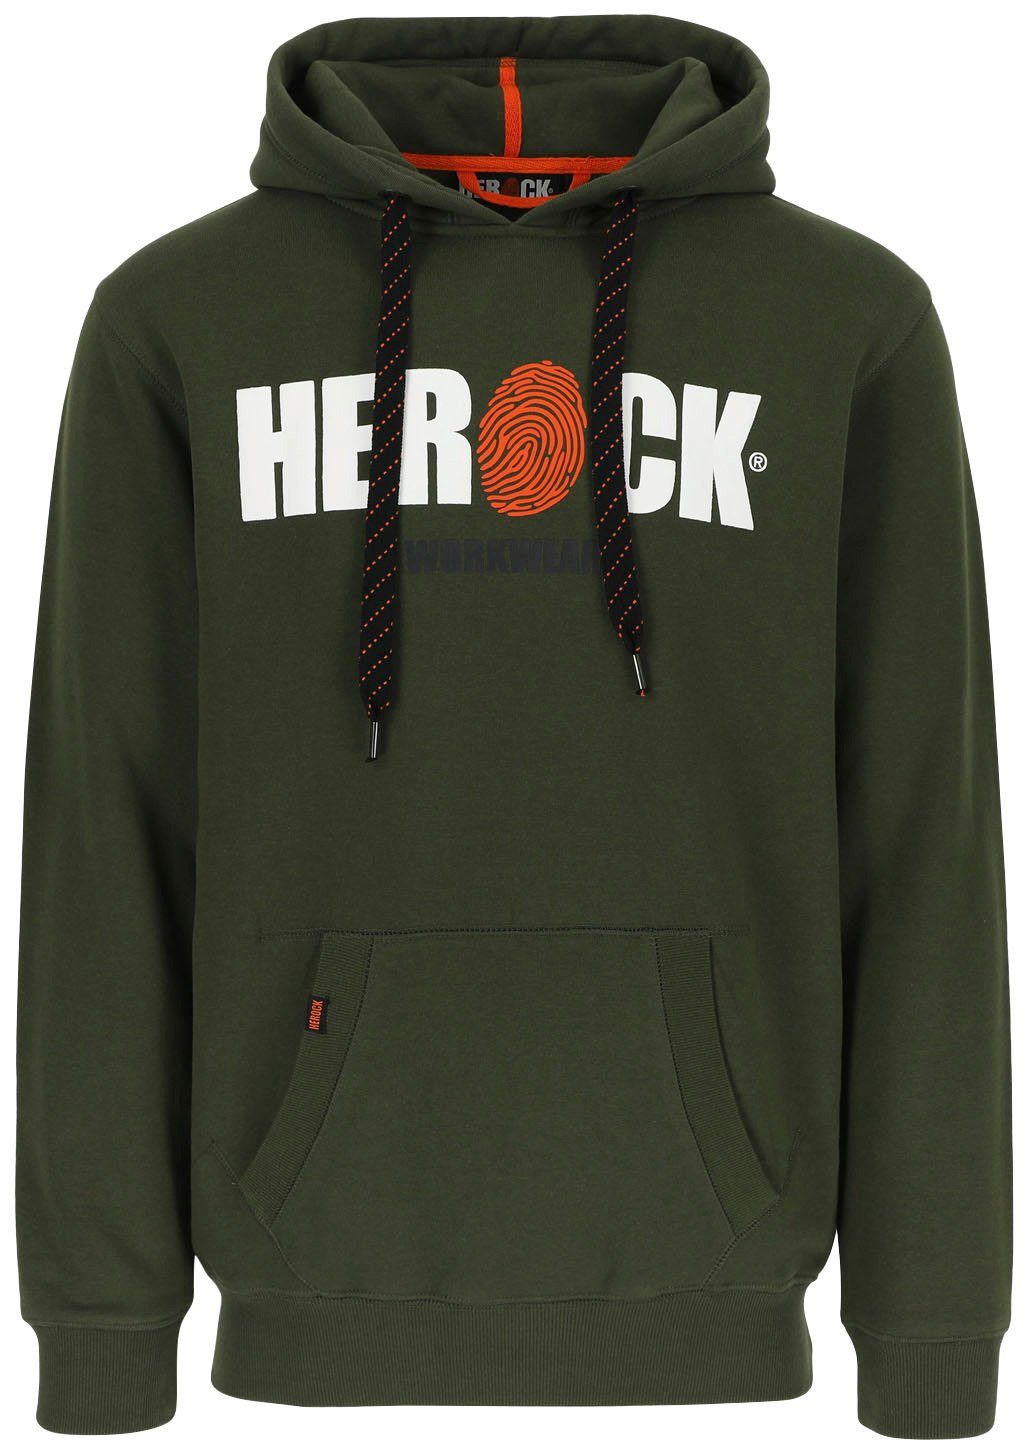 Herock Hoodie HERO Mit Herock®-Aufdruck, Kangurutasche, sehr angenehm und weich khaki